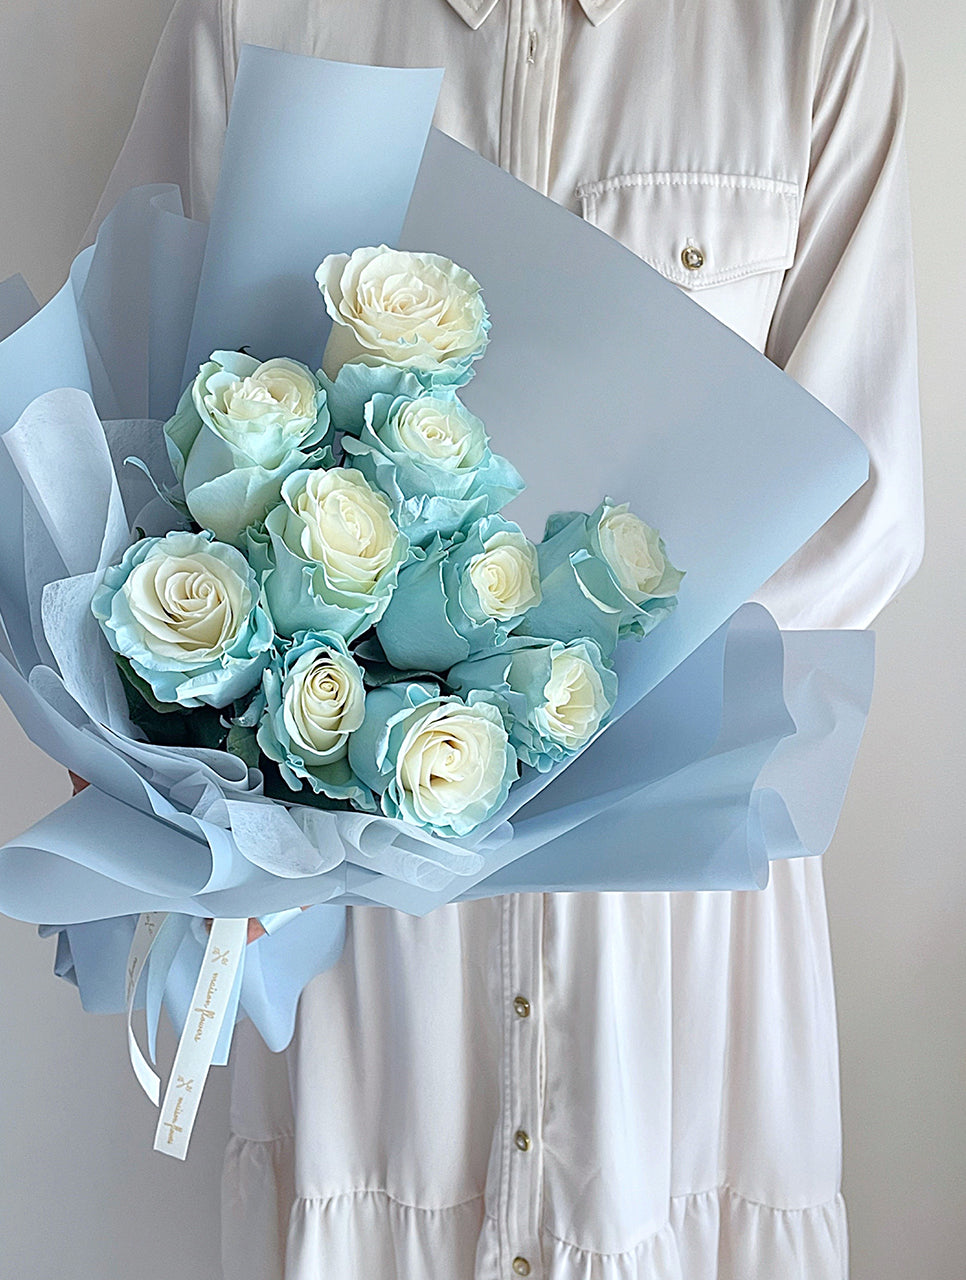 藍玫瑰花束, 冰藍玫瑰花束, Blue Rose